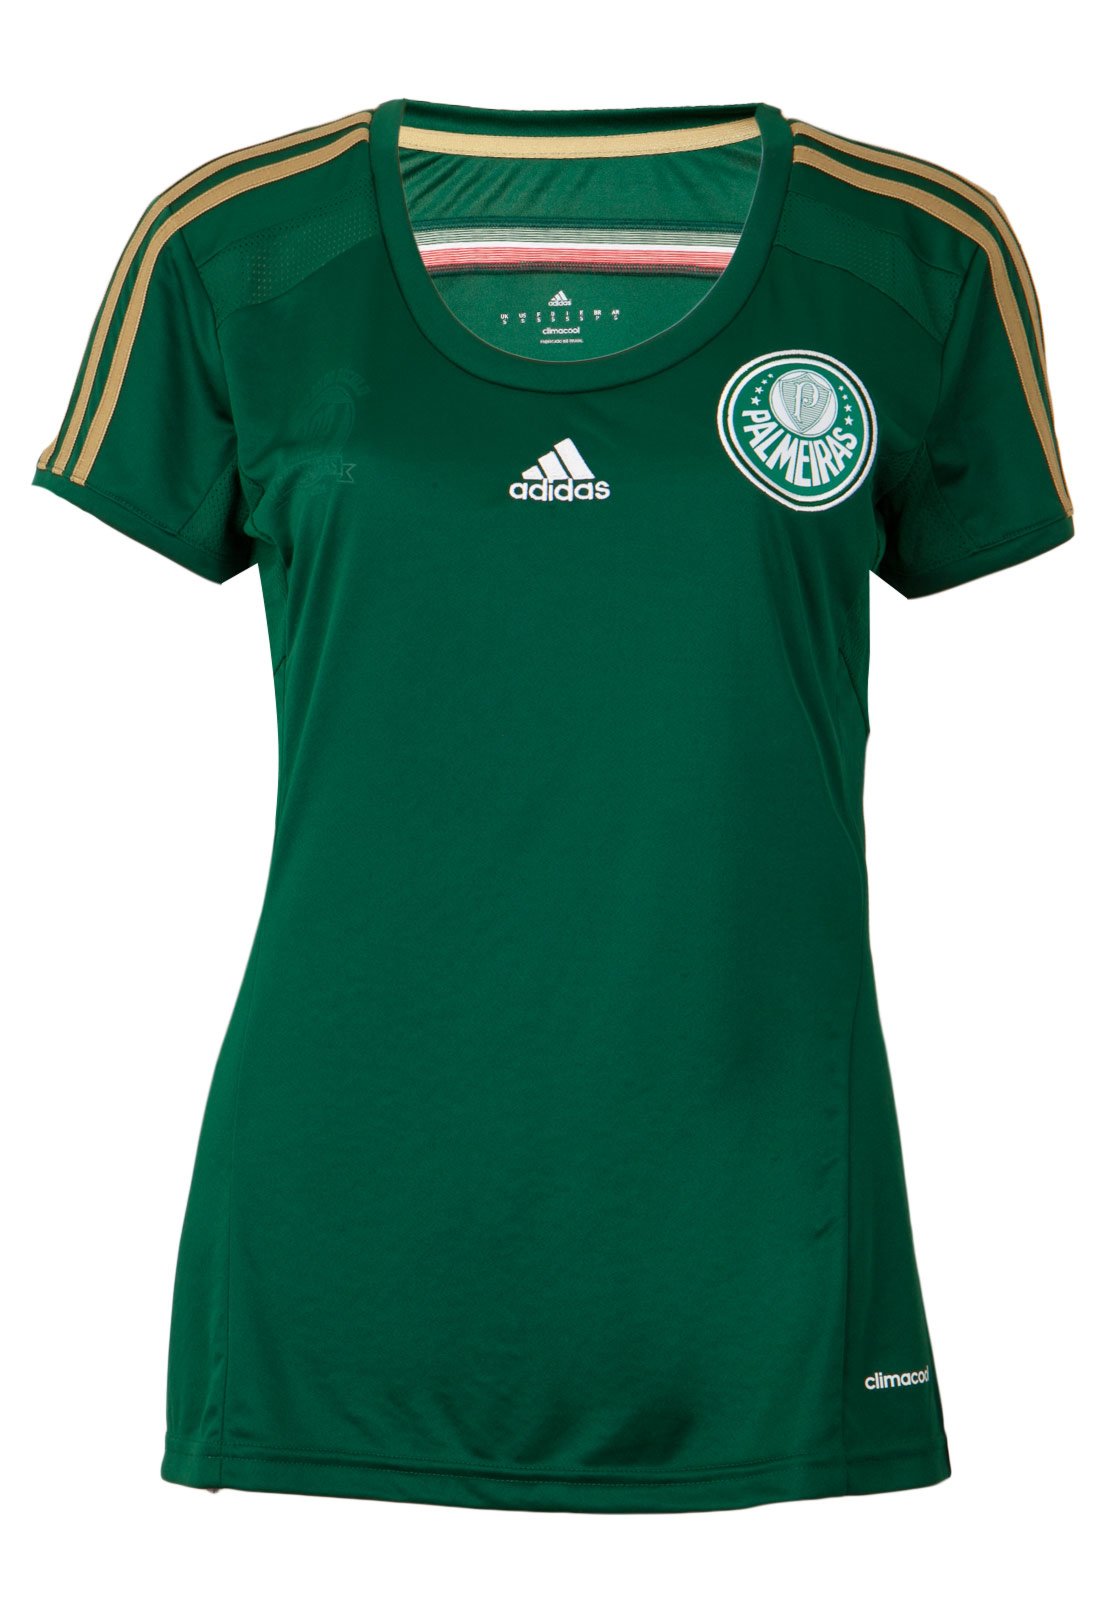 camiseta adidas feminina verde